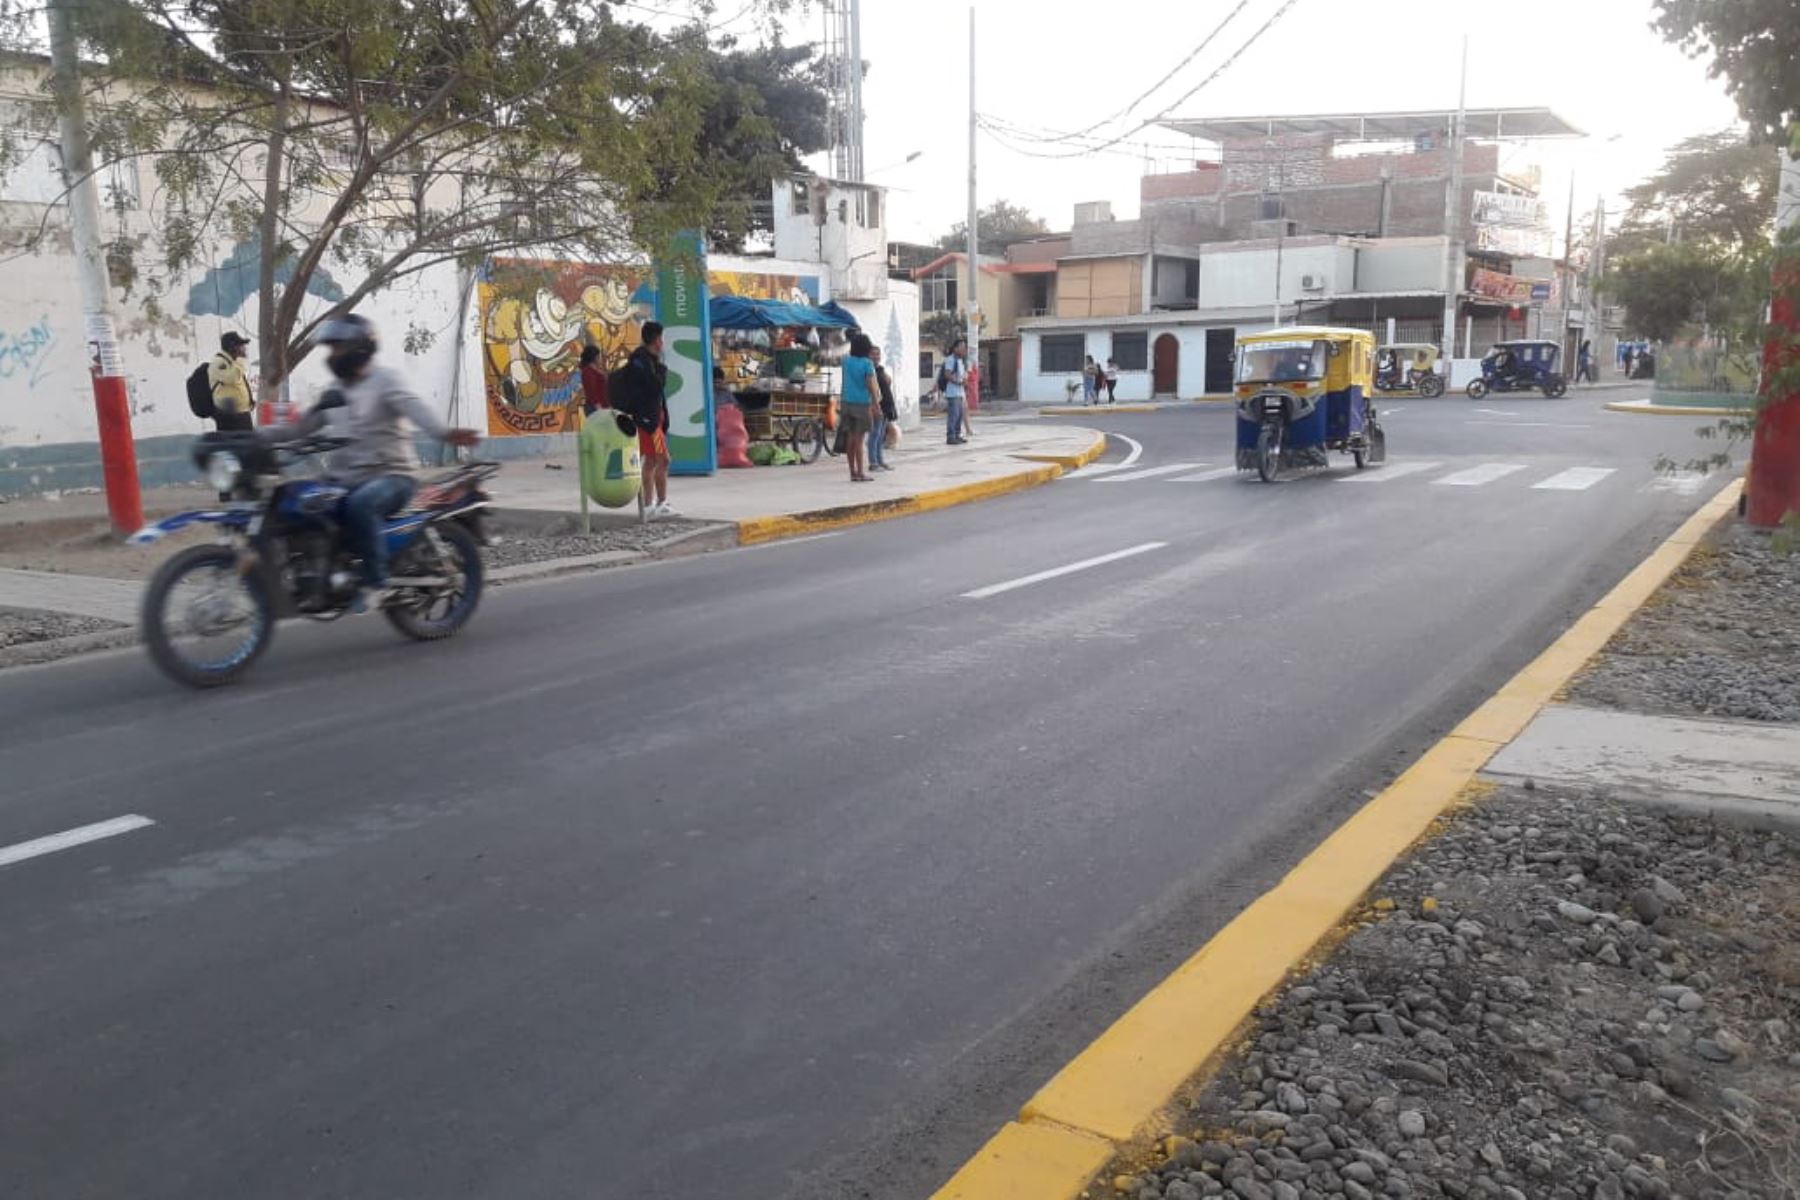 La avenida Guardia Civil, ubicada en el distrito de Castilla, ya se encuentra habilitada tras la reconstrucción de sus dos carriles de ida y vuelta, dañados por El Niño Costero, informó la Autoridad para la Reconstrucción con Cambios (ARCC).